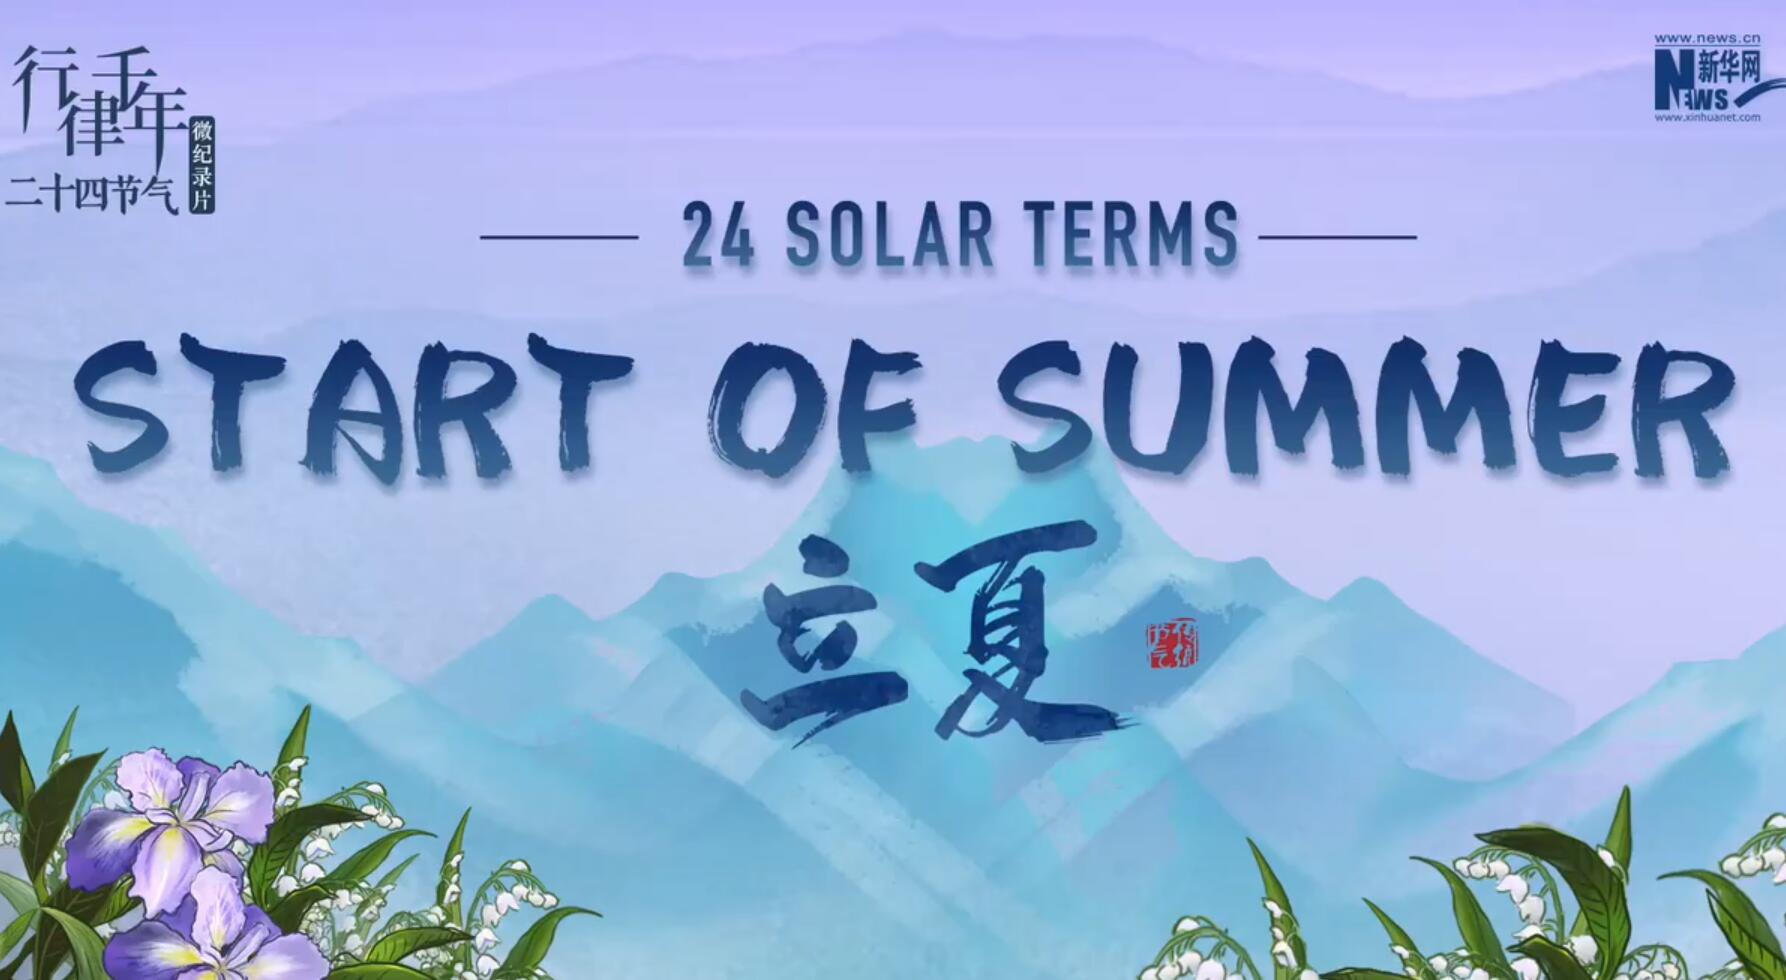 24 Solar Terms: Start of Summer